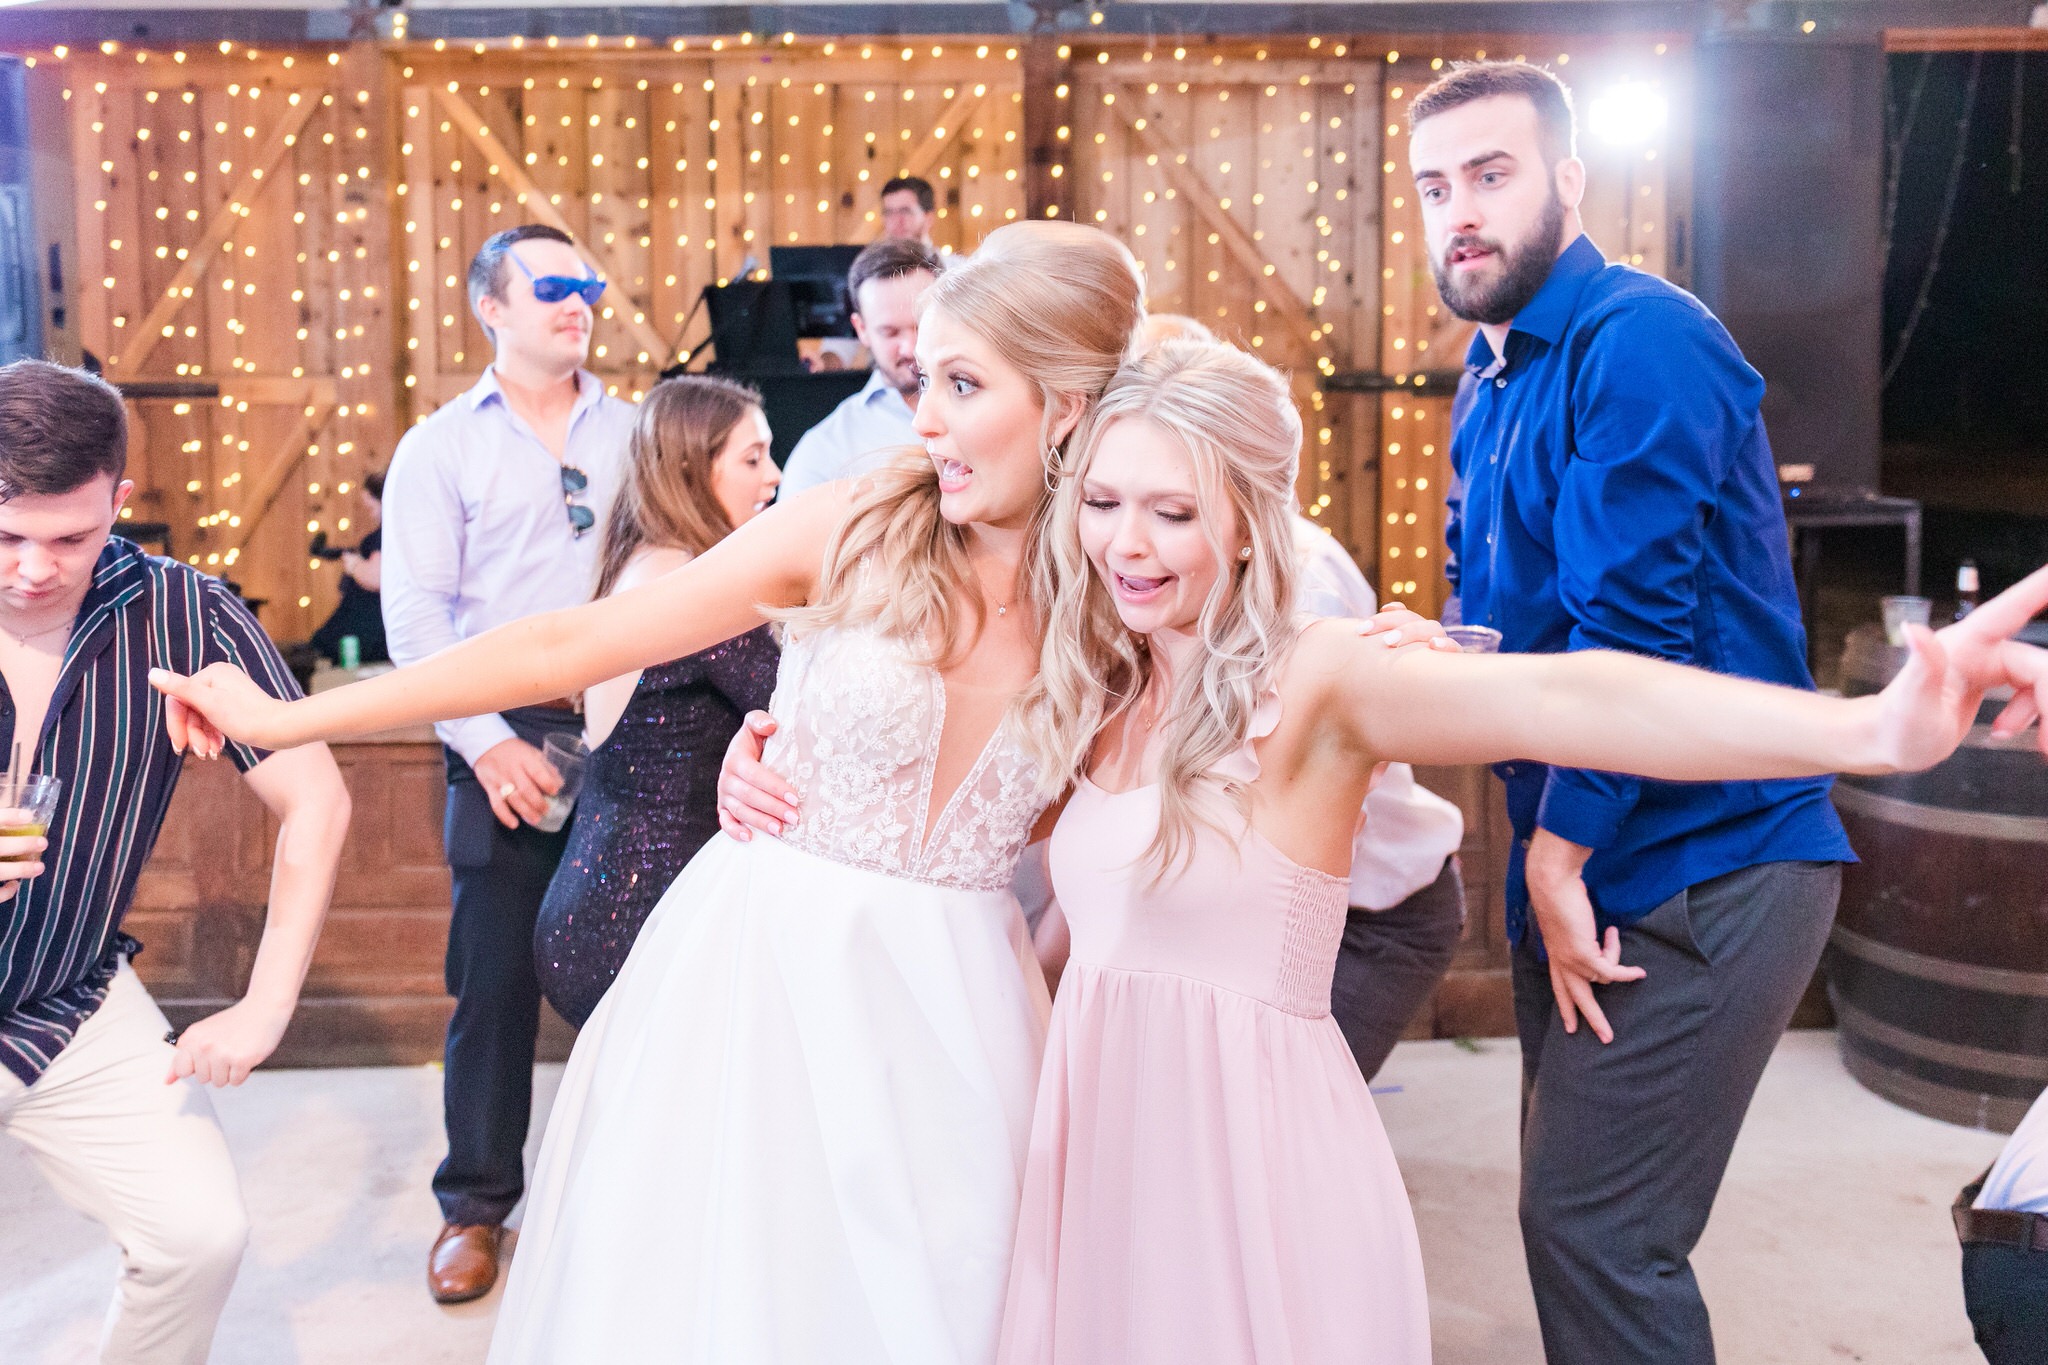 A Blush & Gold wedding at Don Strange Ranch in Boerne, TX by Dawn Elizabeth Studios, San Antonio Wedding Photographer